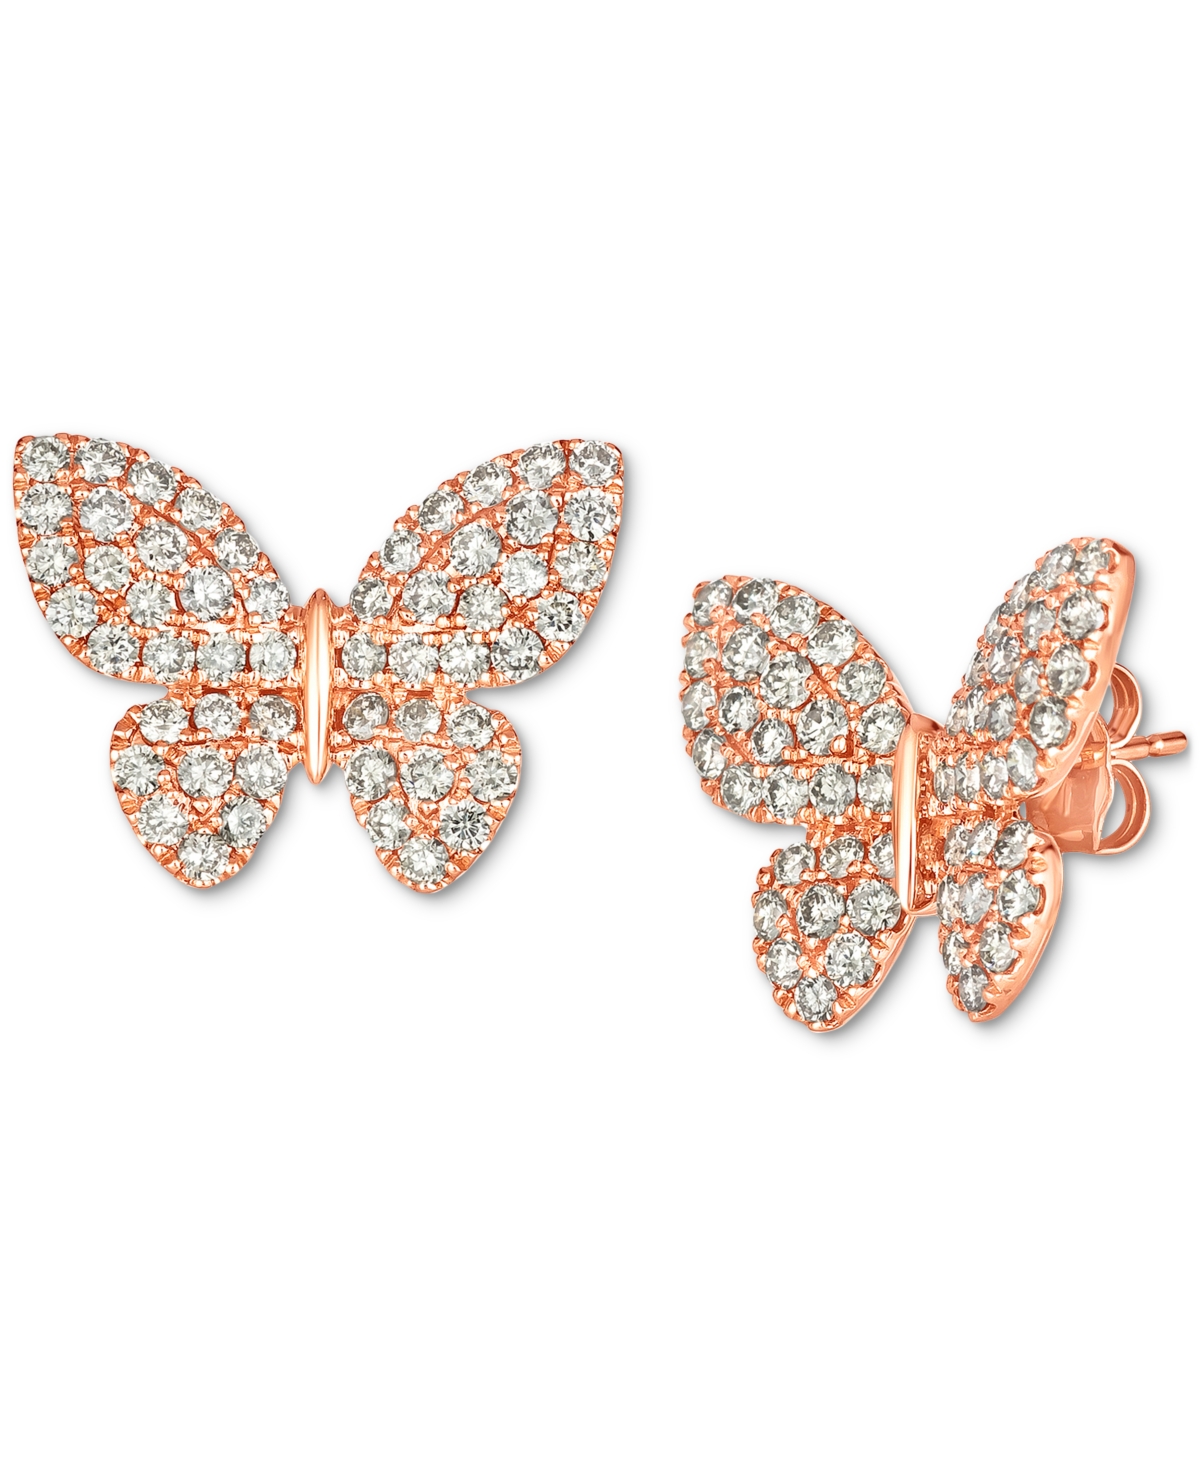 Nude Diamond Butterfly Stud Earrings (2 ct. t.w.) in 14k Rose Gold - K Strawberry Gold Earrings